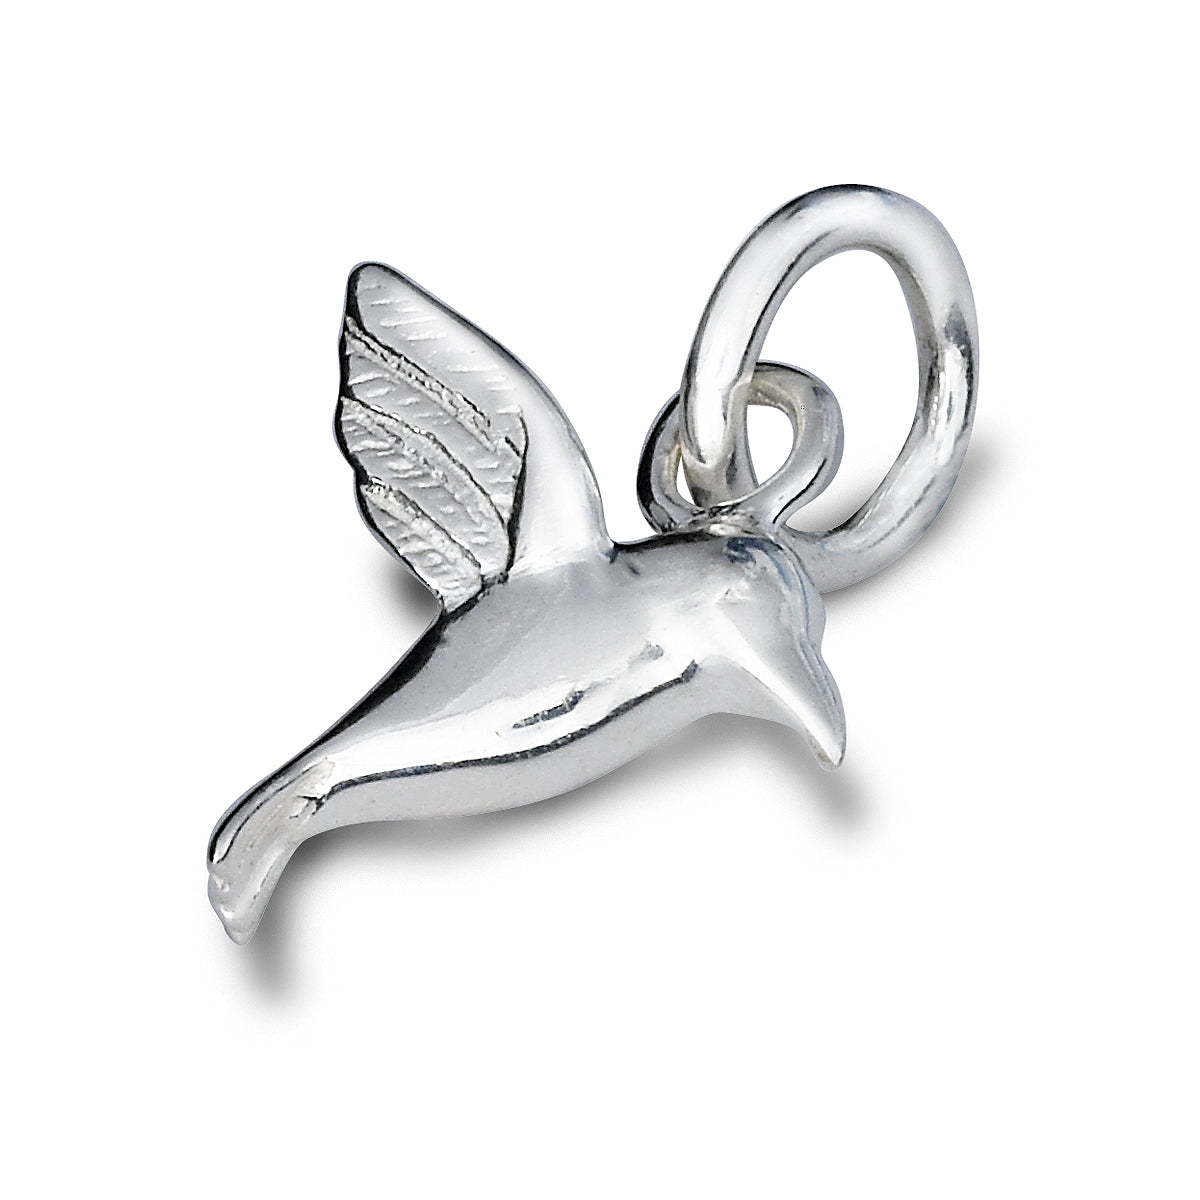 Hummingbird Silver Charm Bracelet from Scarlett Jewellery UK